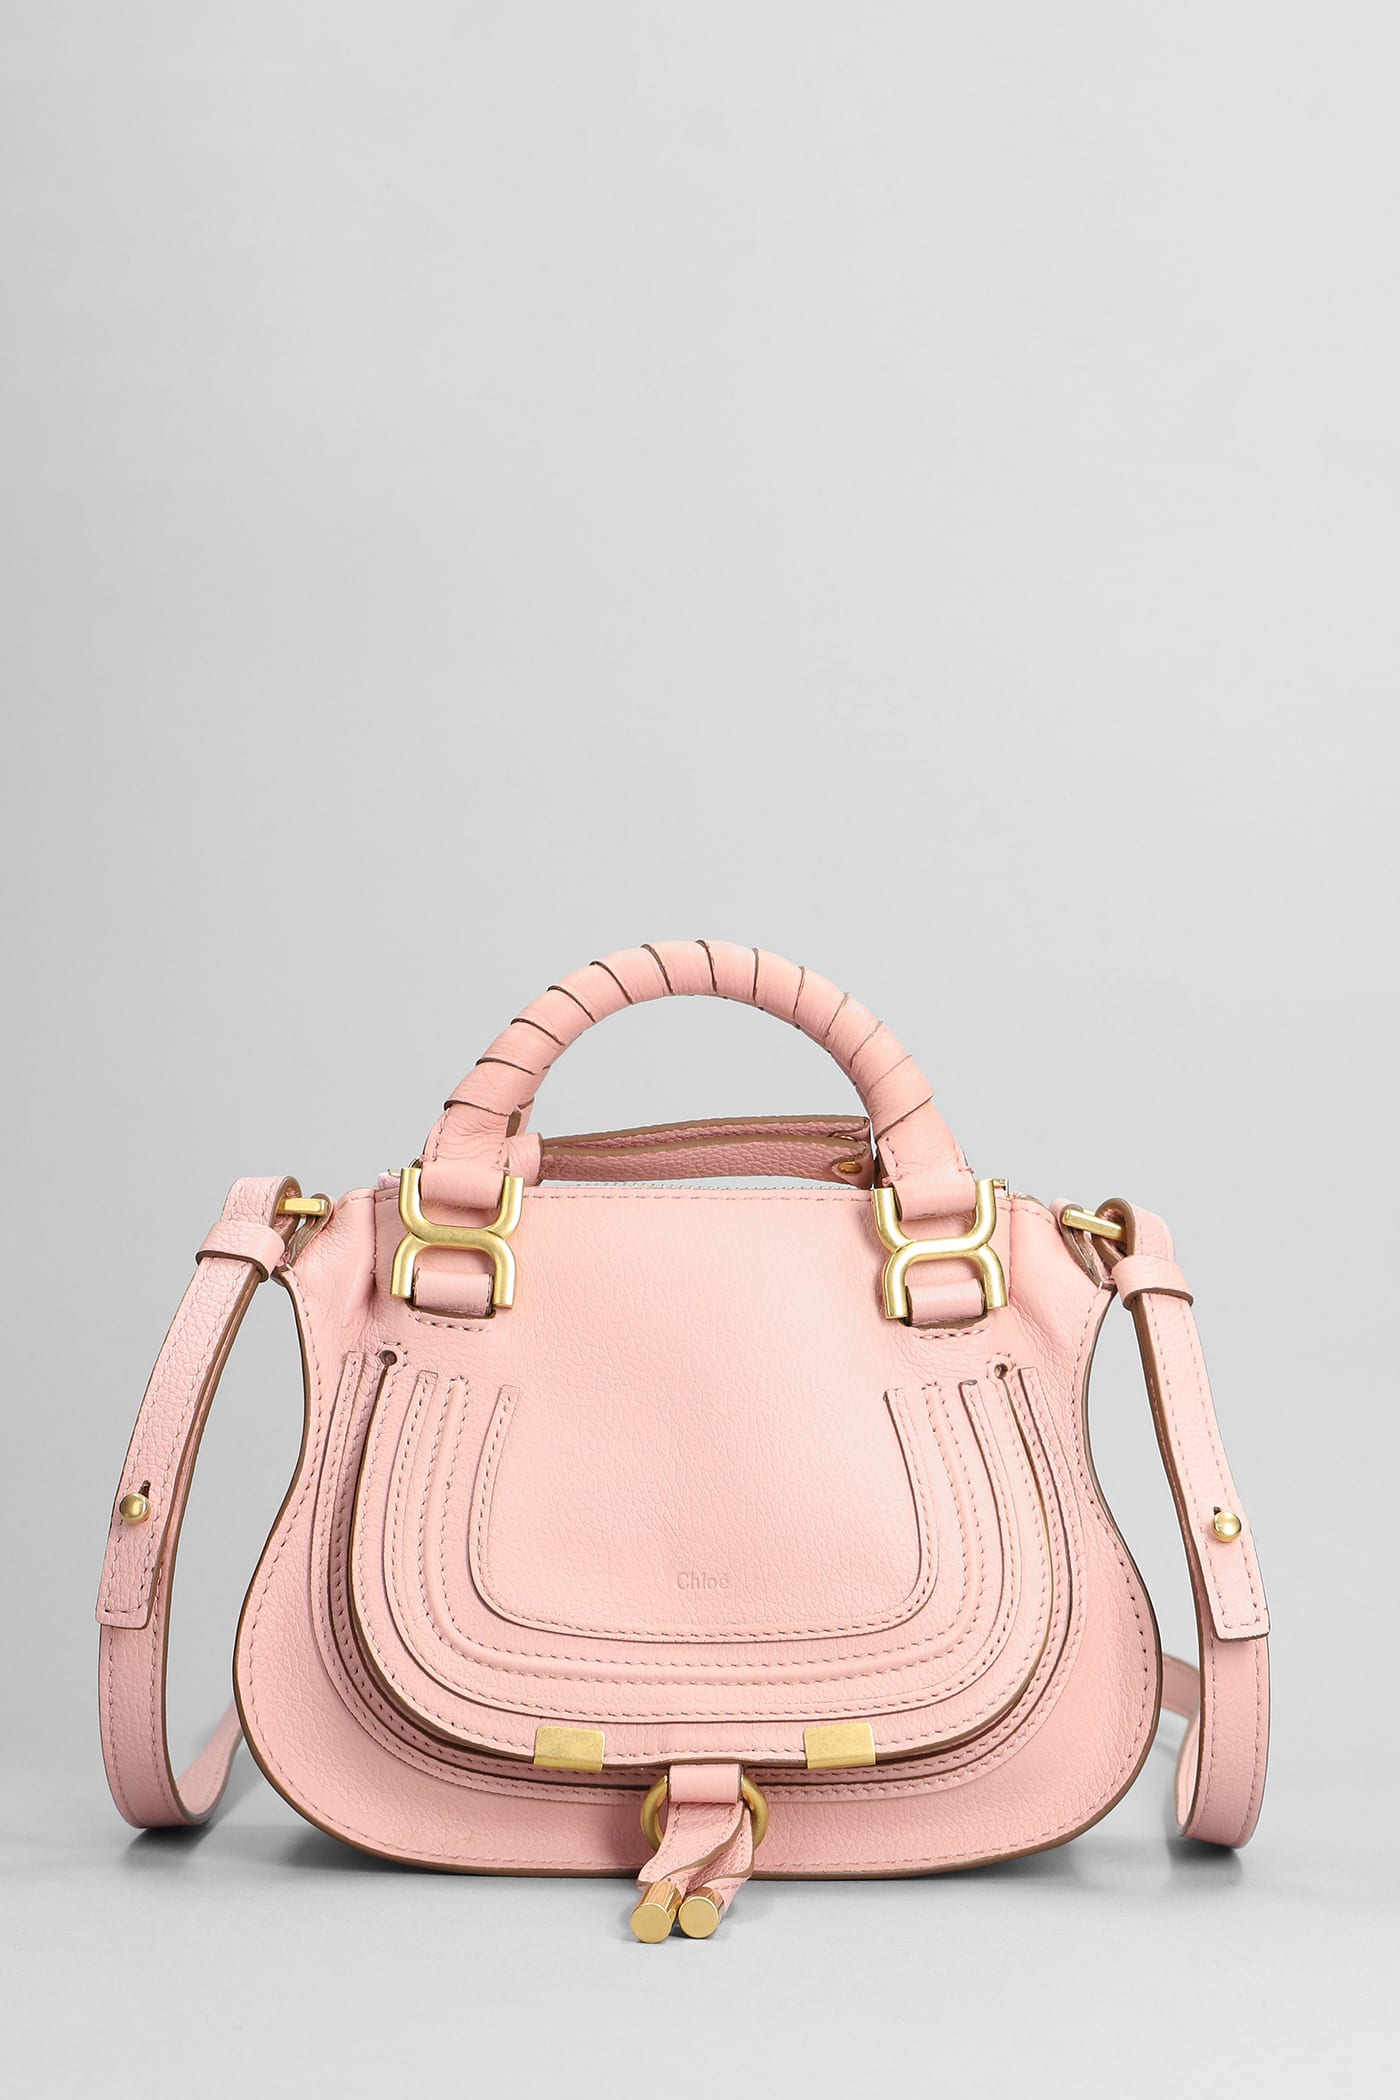 Chloé Mercie Mini Shoulder Bag In Rose-pink Leather